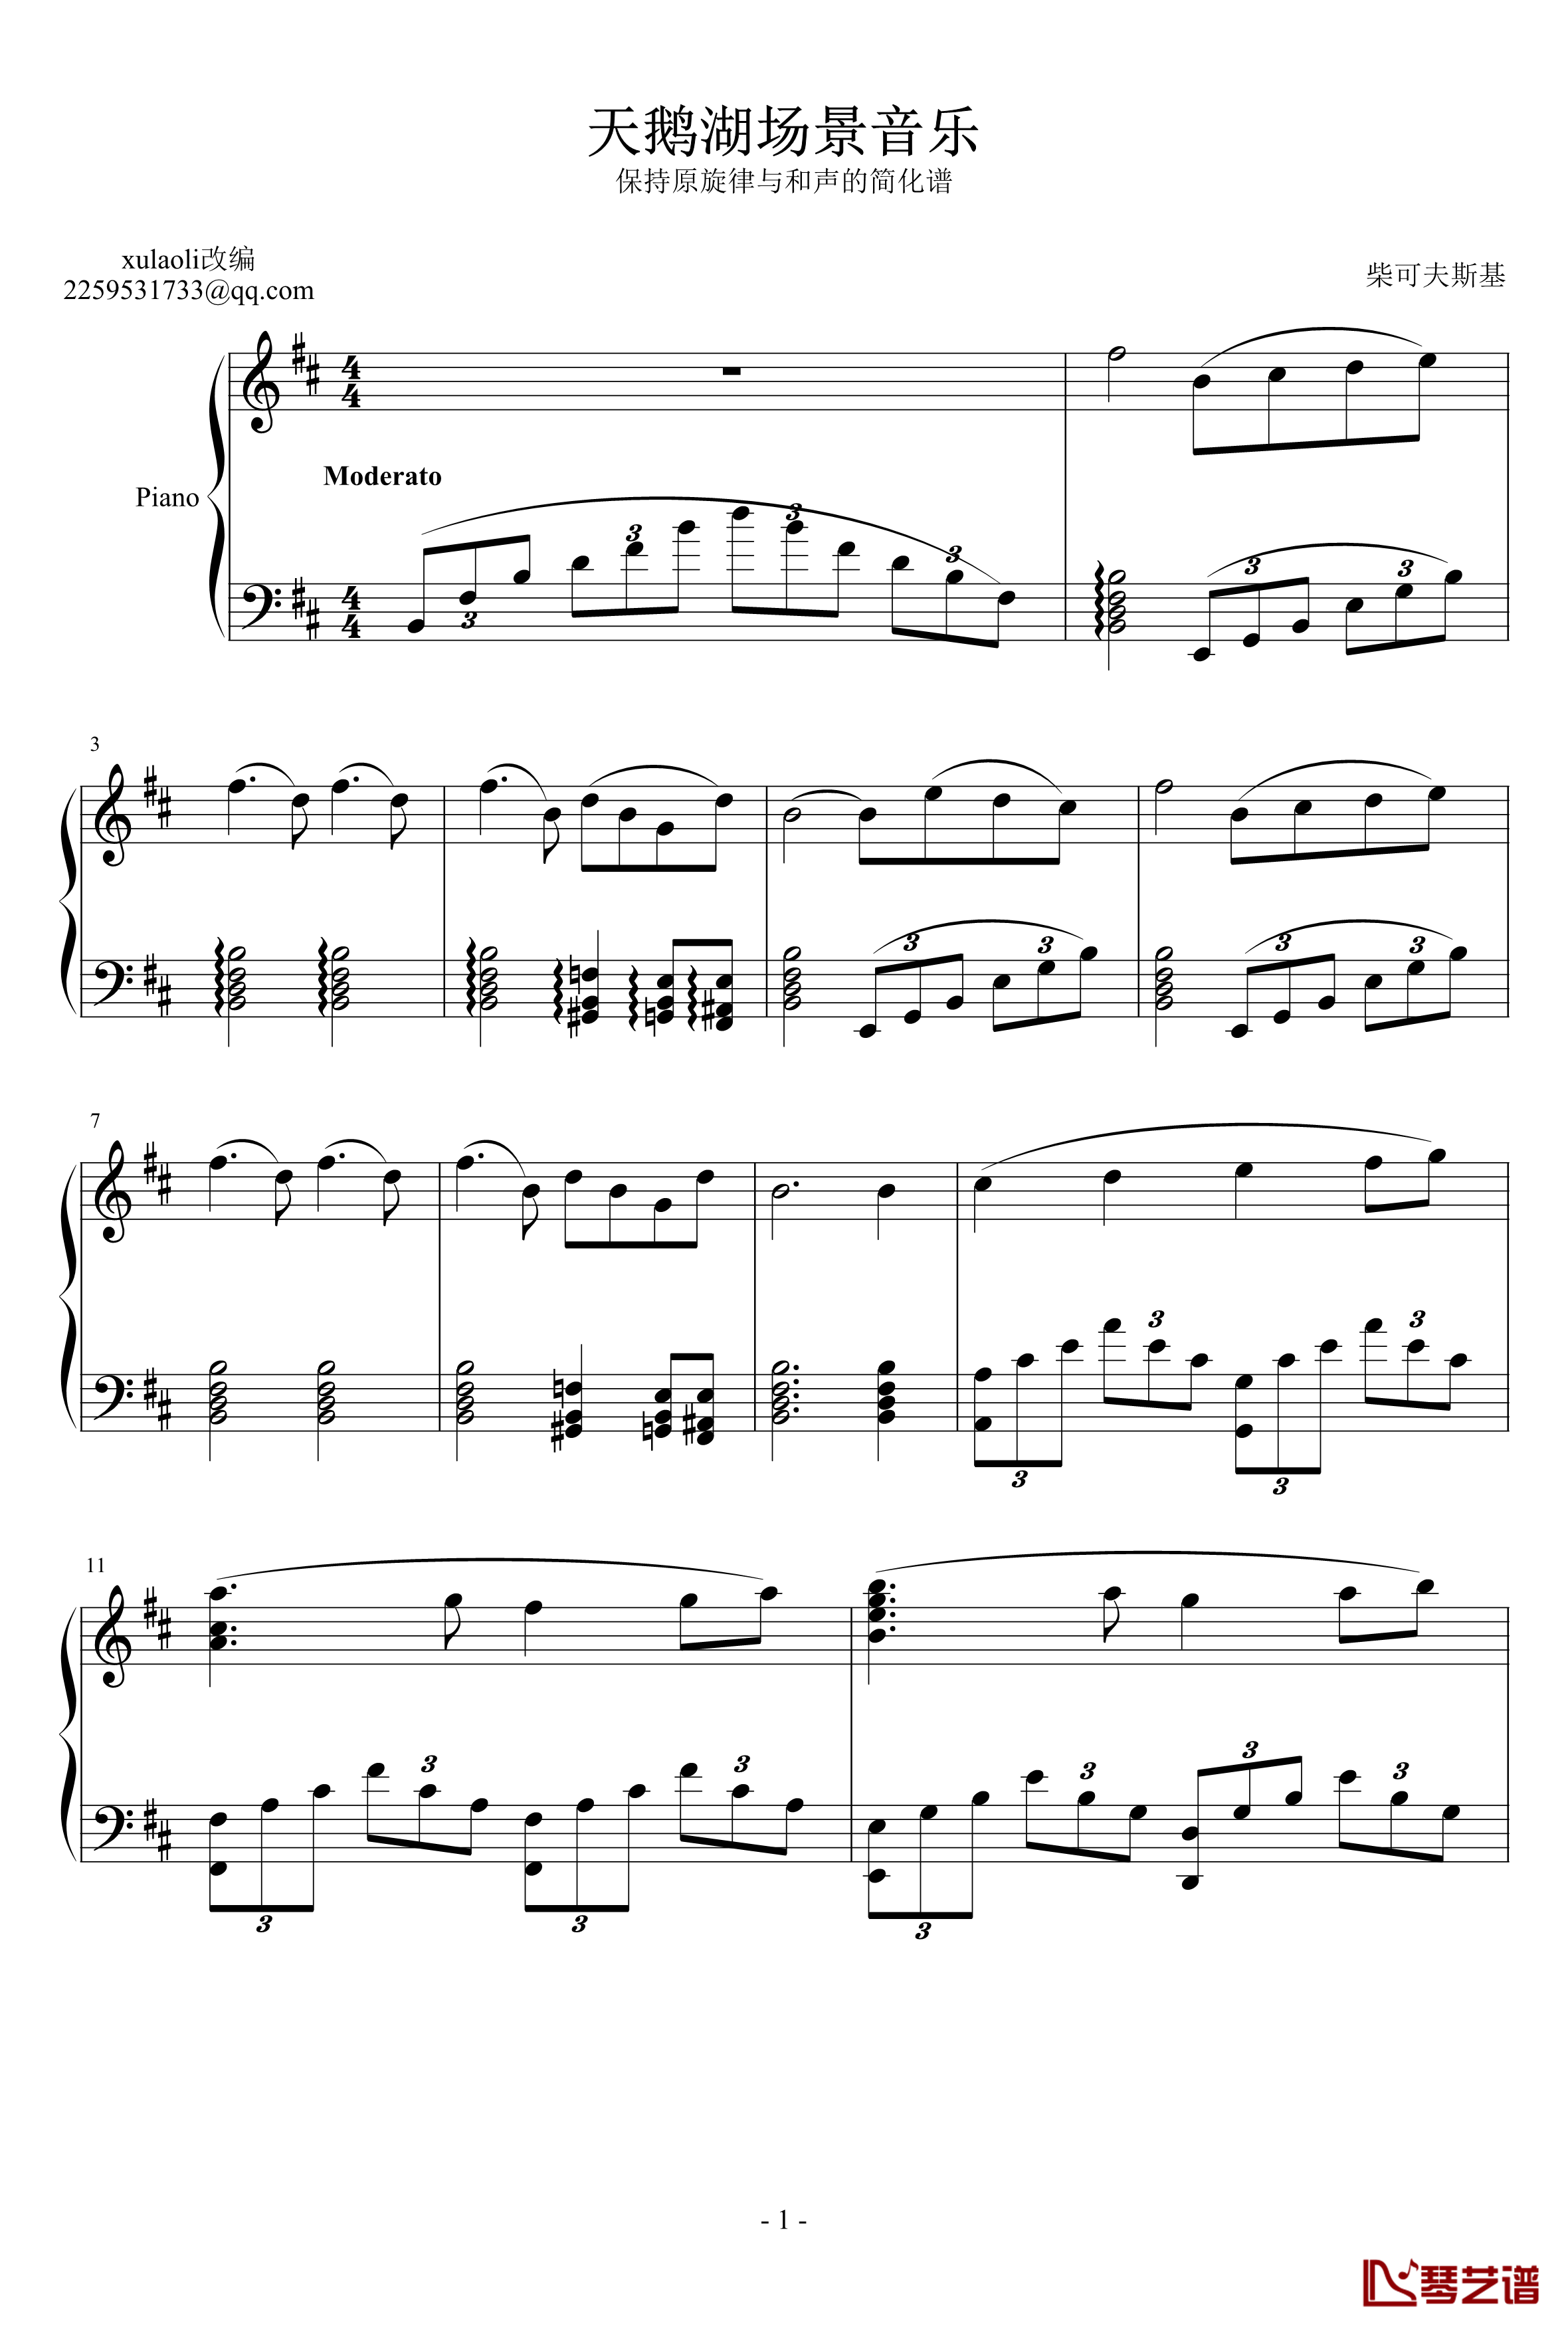 天鹅湖场景旋律钢琴谱-柴科夫斯基-Peter Ilyich Tchaikovsky1